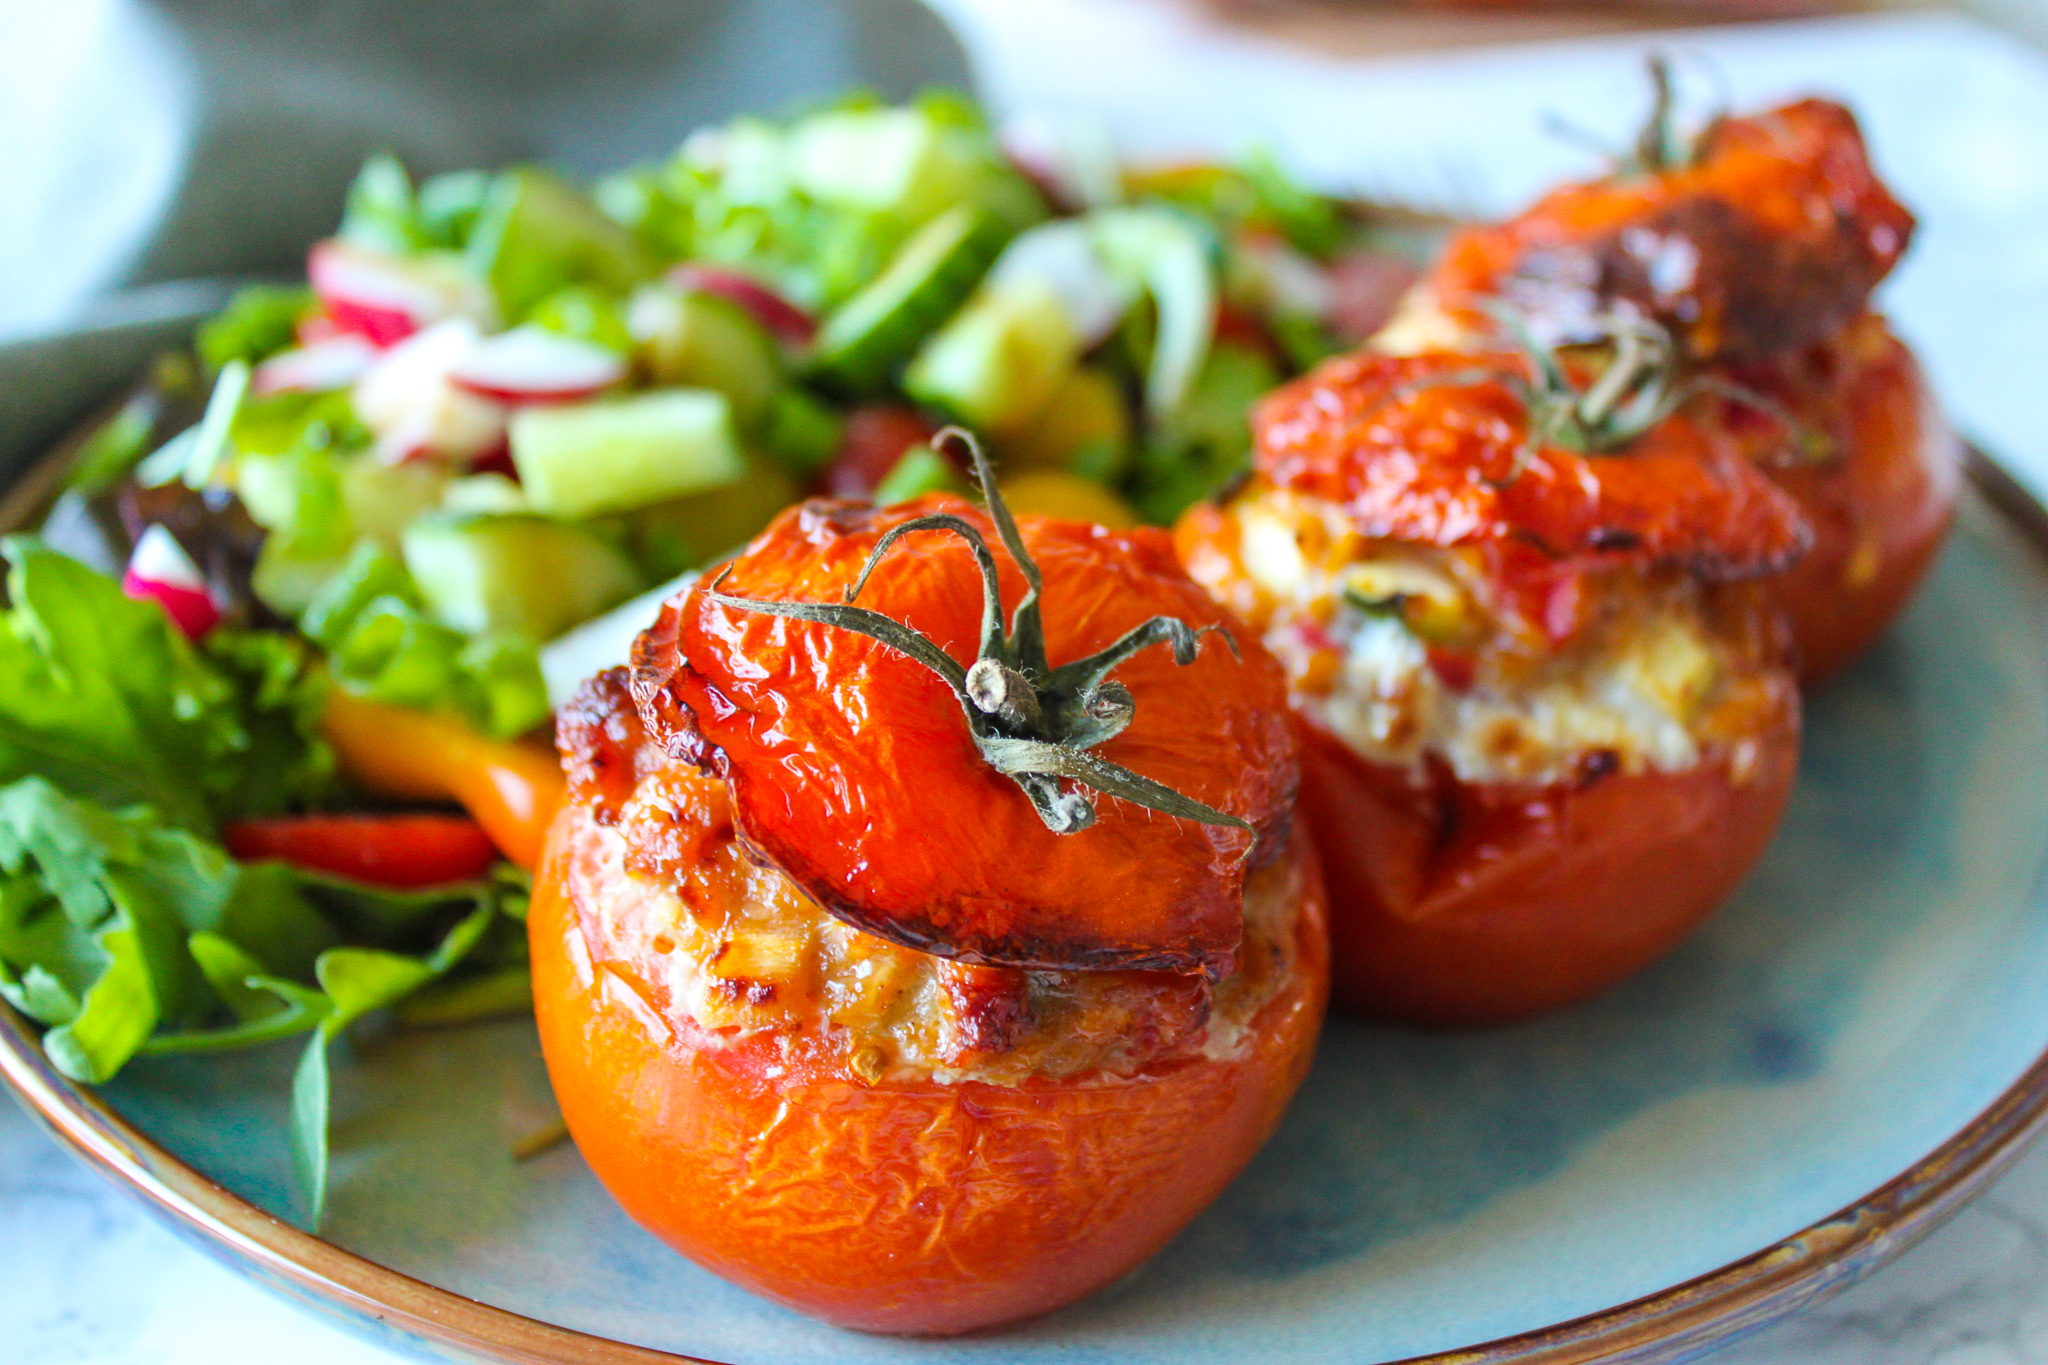 Verminderen Vouwen slijm Gevulde tomaten met groentjes - As Cooked By Ginger